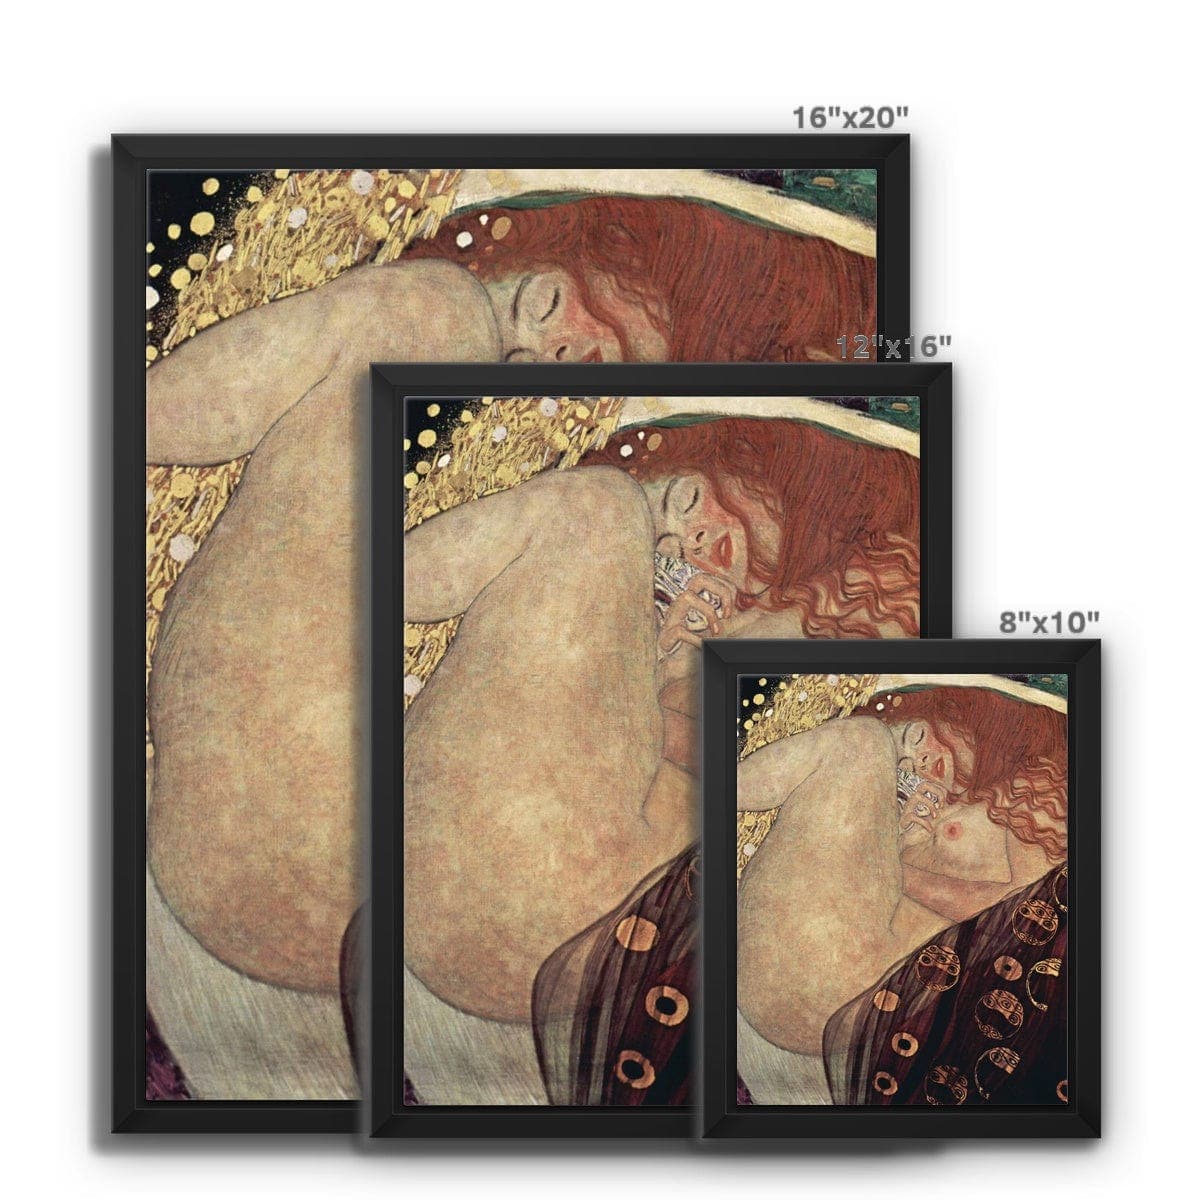 Gustav Klimt's Danae (1907-1908) Framed Canvas